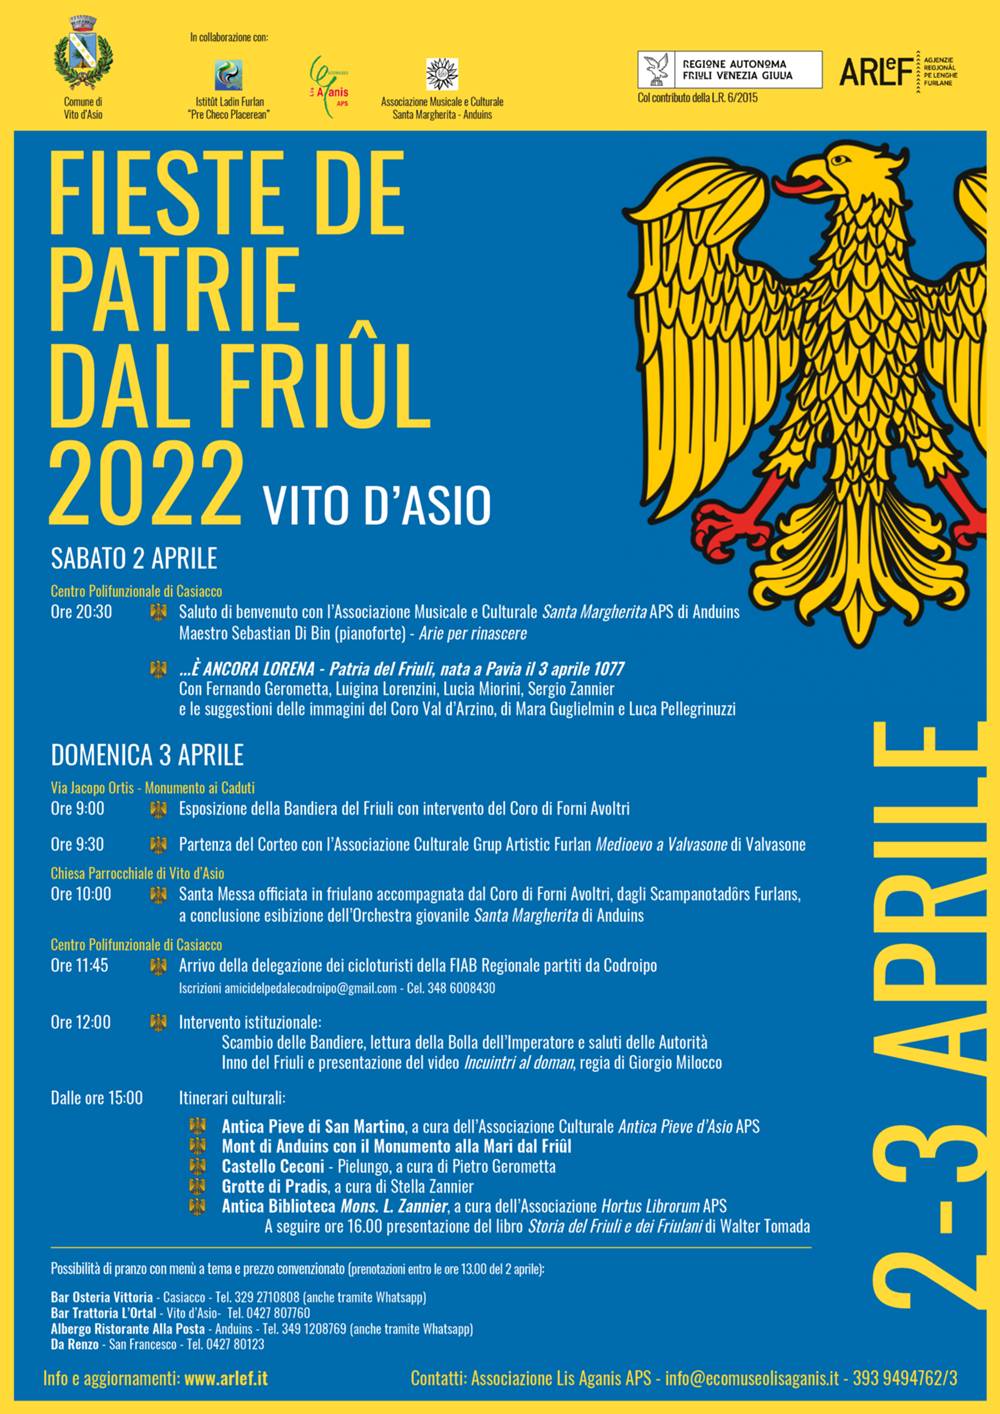 Festa della Patria del Friuli, Vito d'Asio 3 aprile